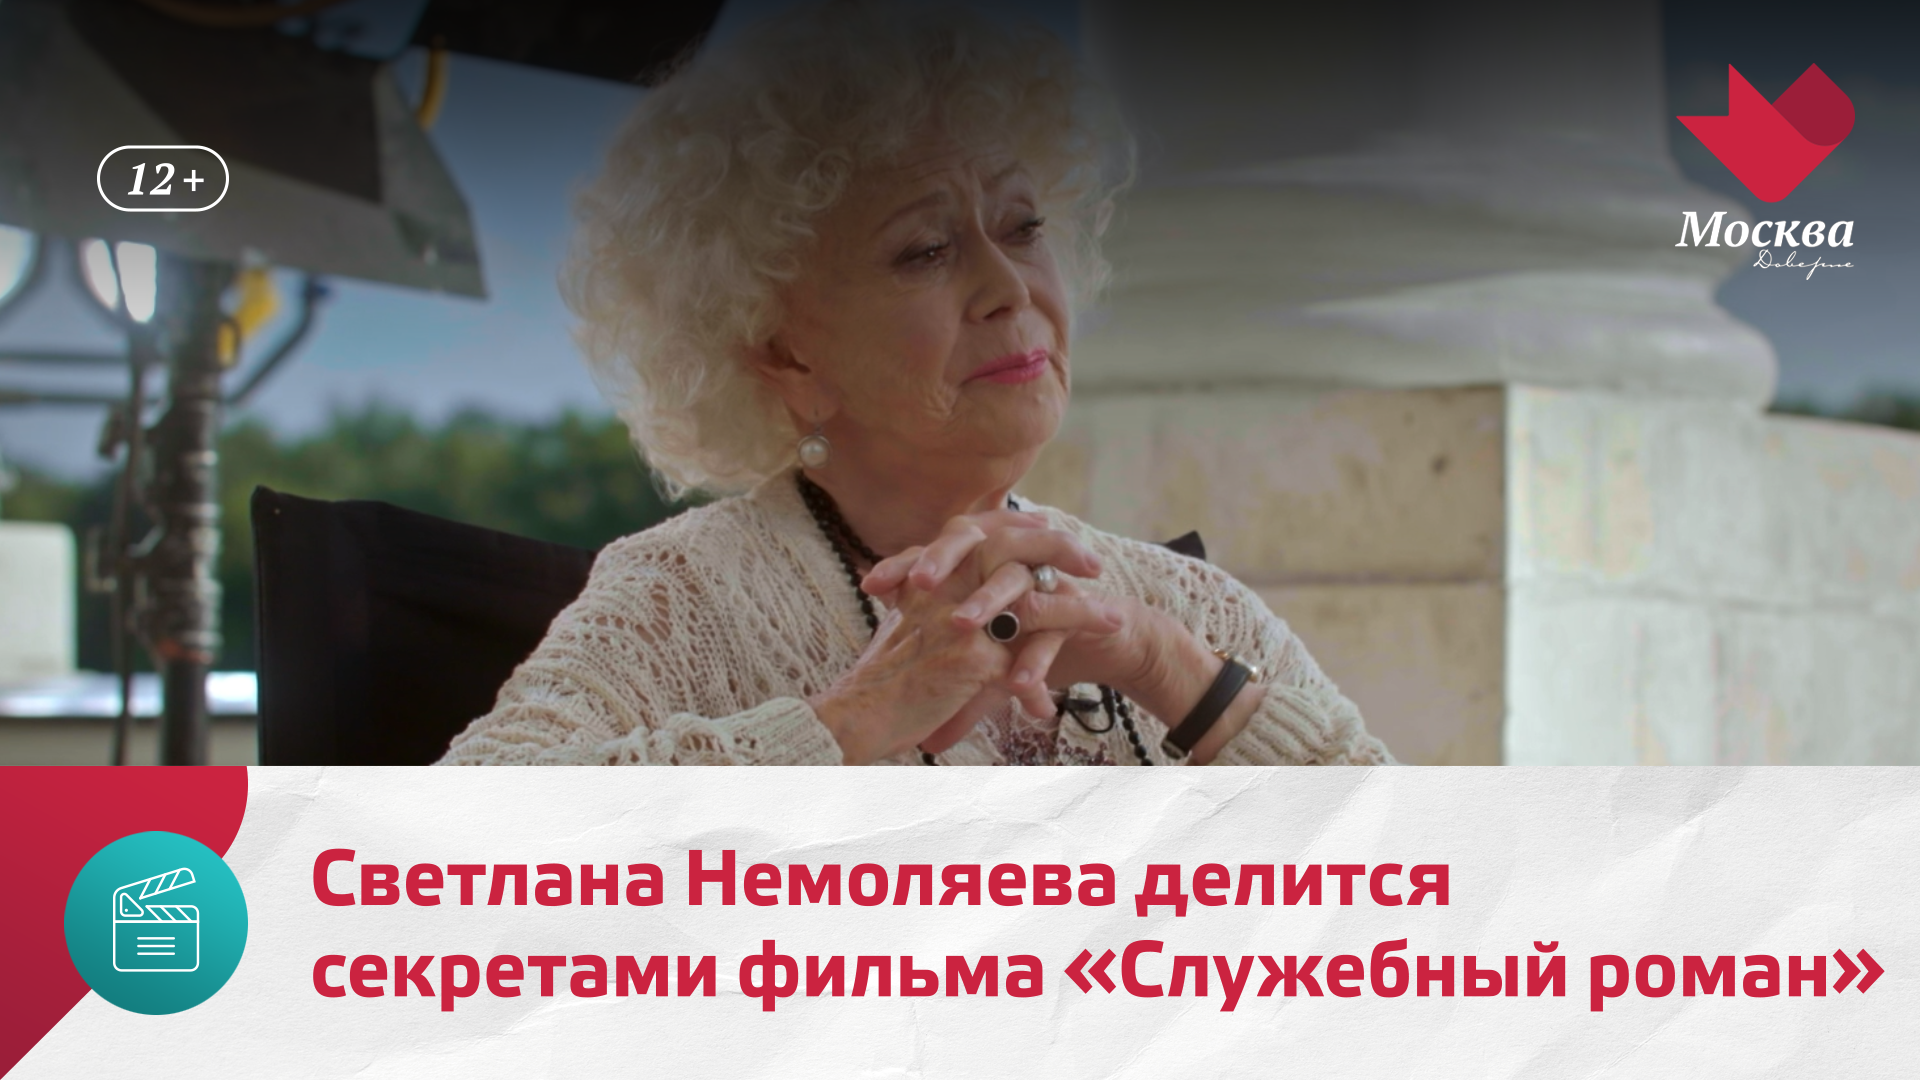 Светлана Немоляева делится секретами фильма «Служебный роман» | Киноулица